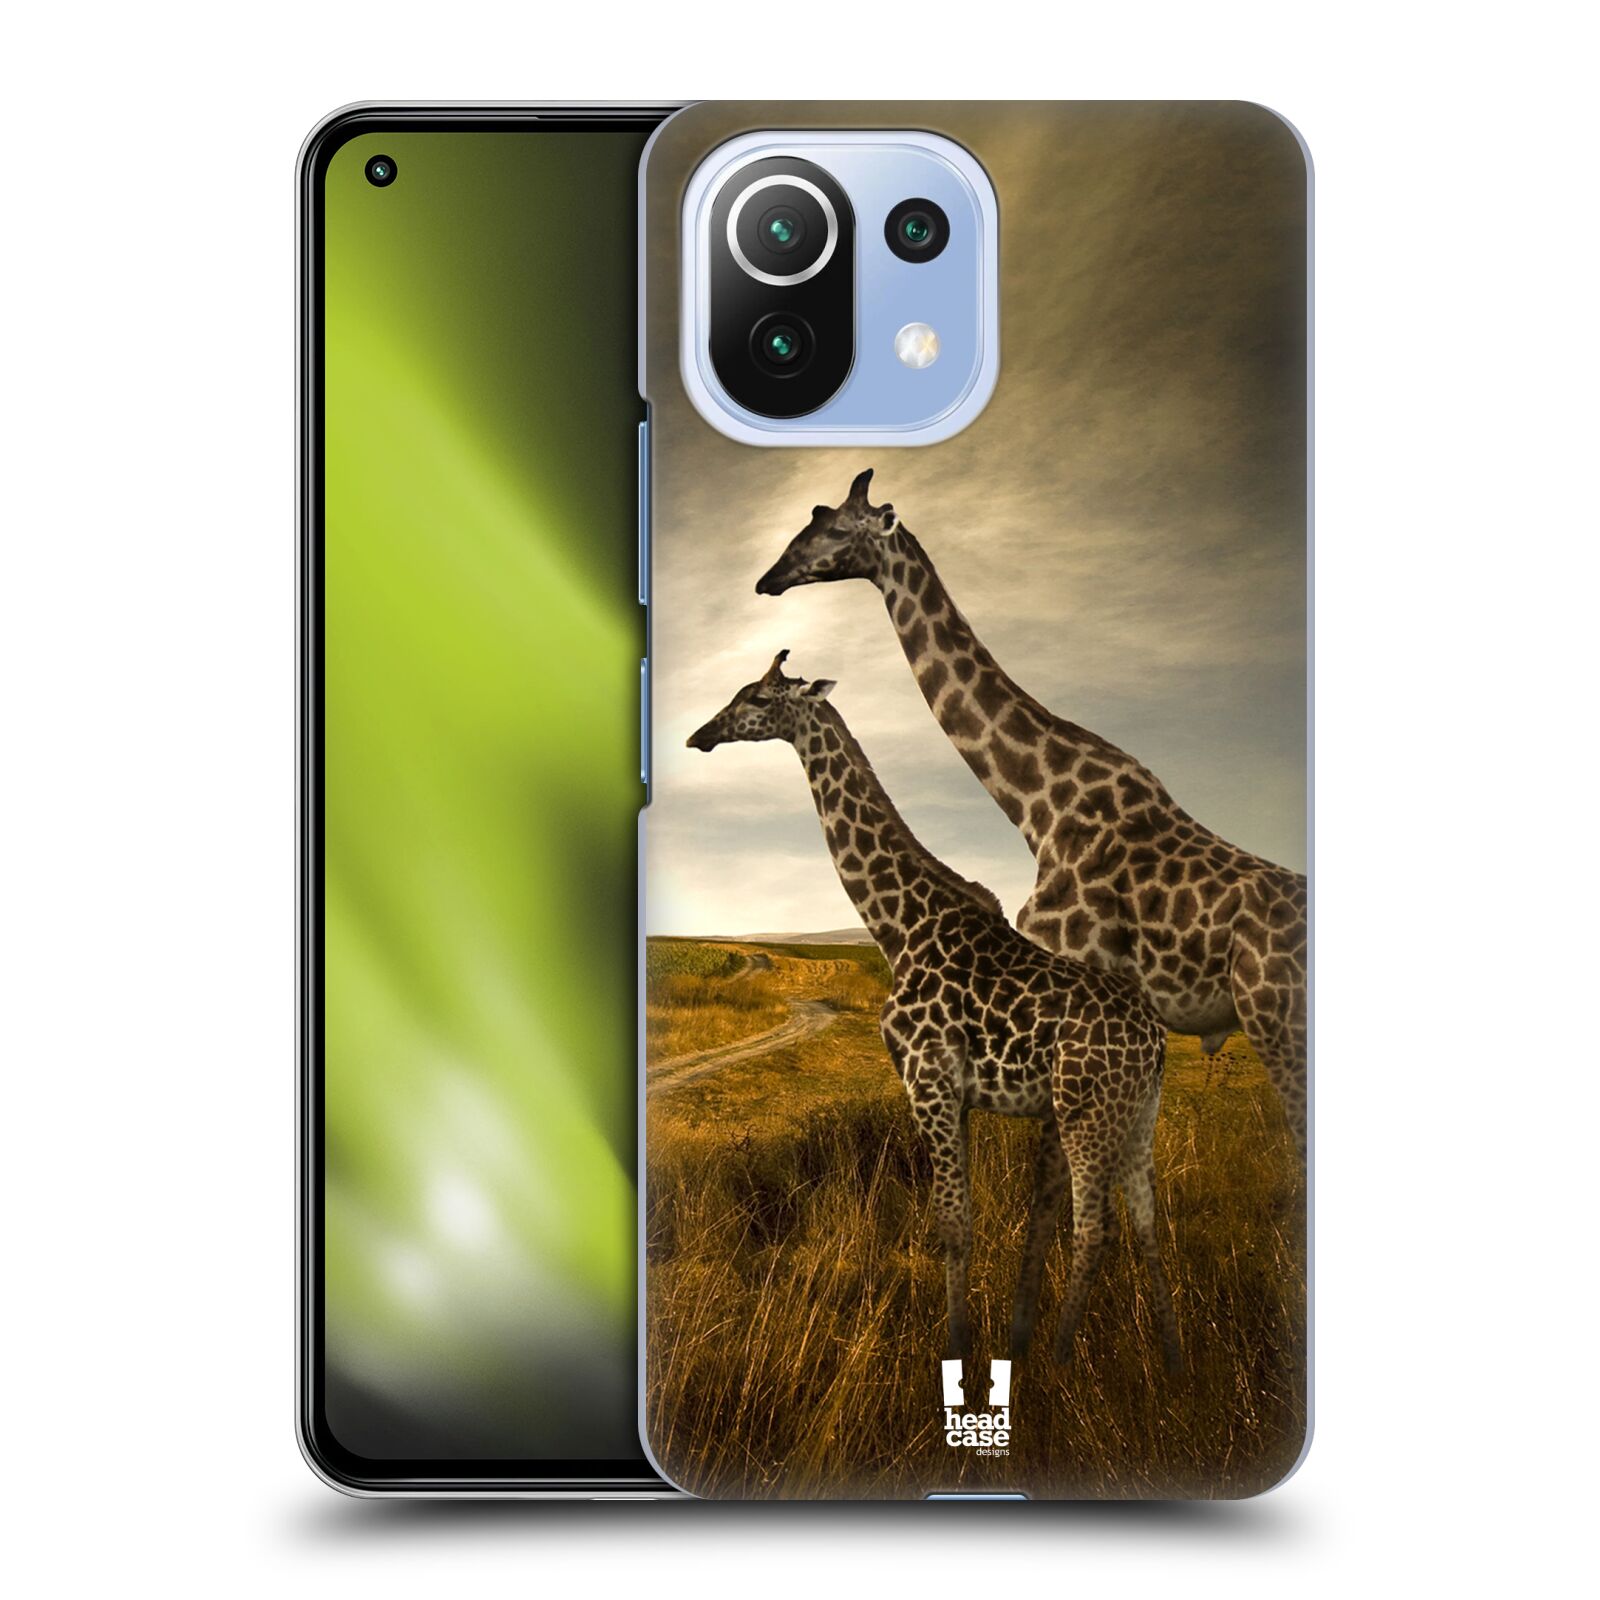 Zadní obal pro mobil Xiaomi Mi 11 Lite / Mi 11 Lite 5G - HEAD CASE - Svět zvířat žirafy